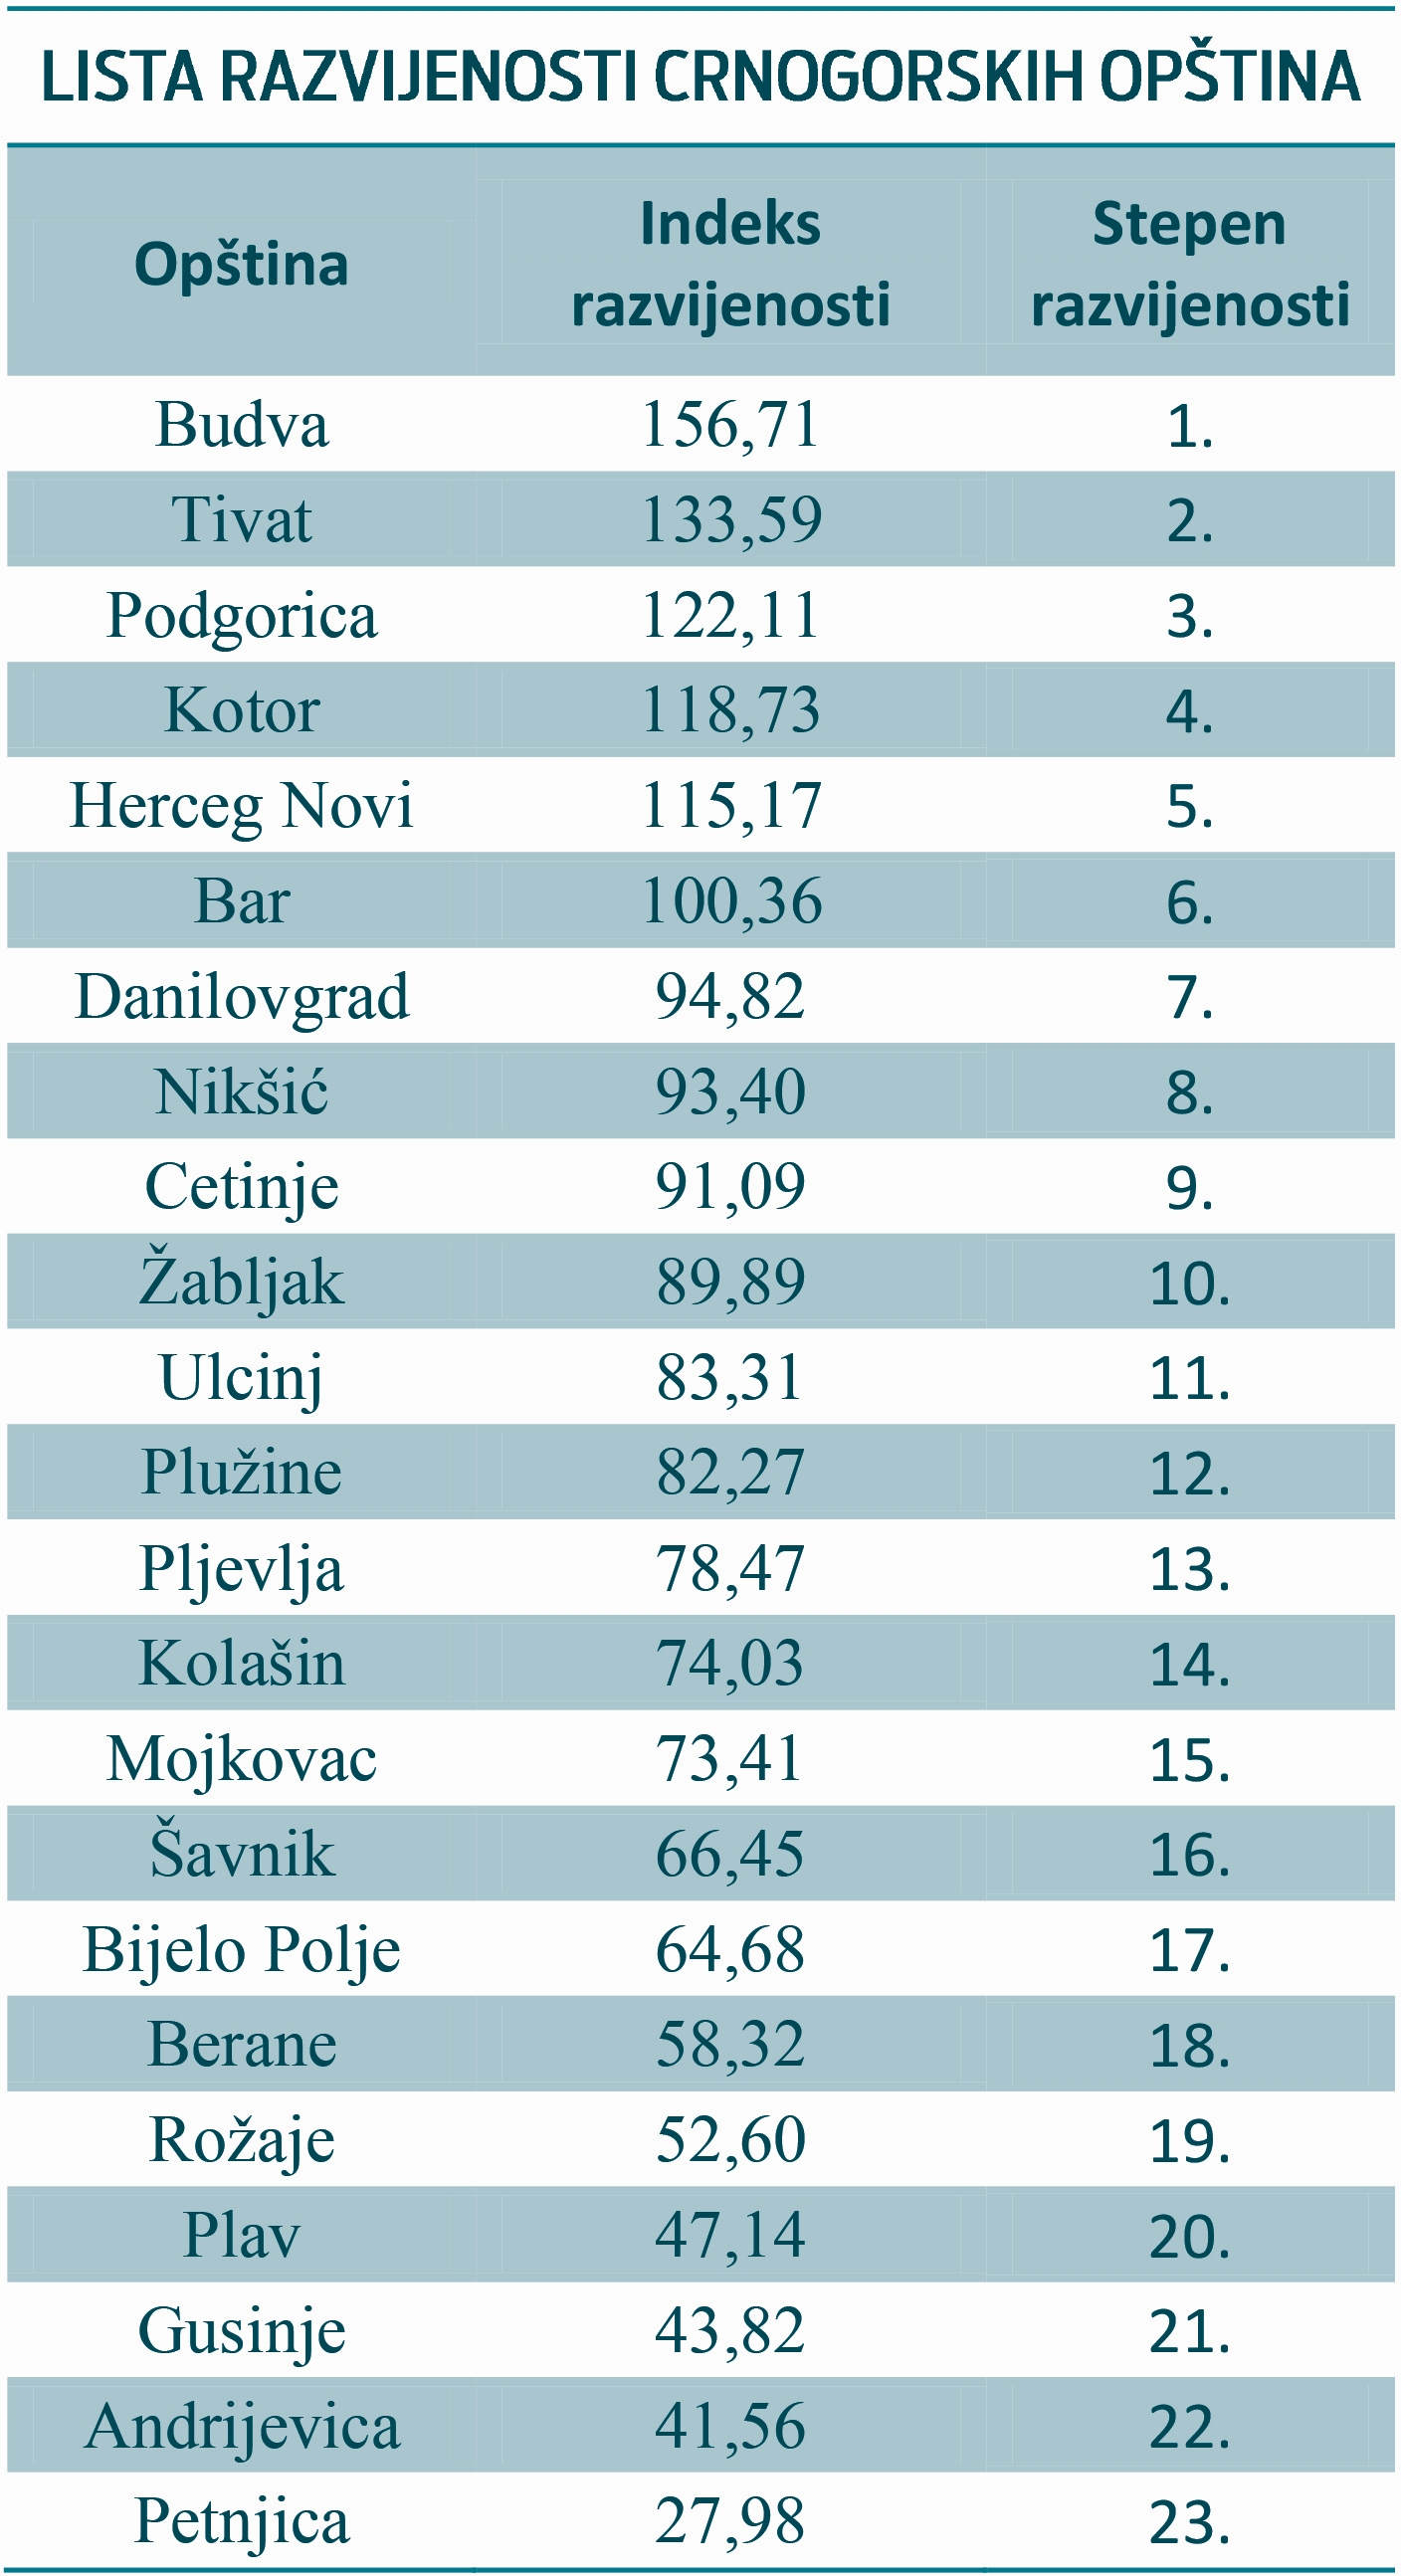 lista razvijenosti crnogorskih opština